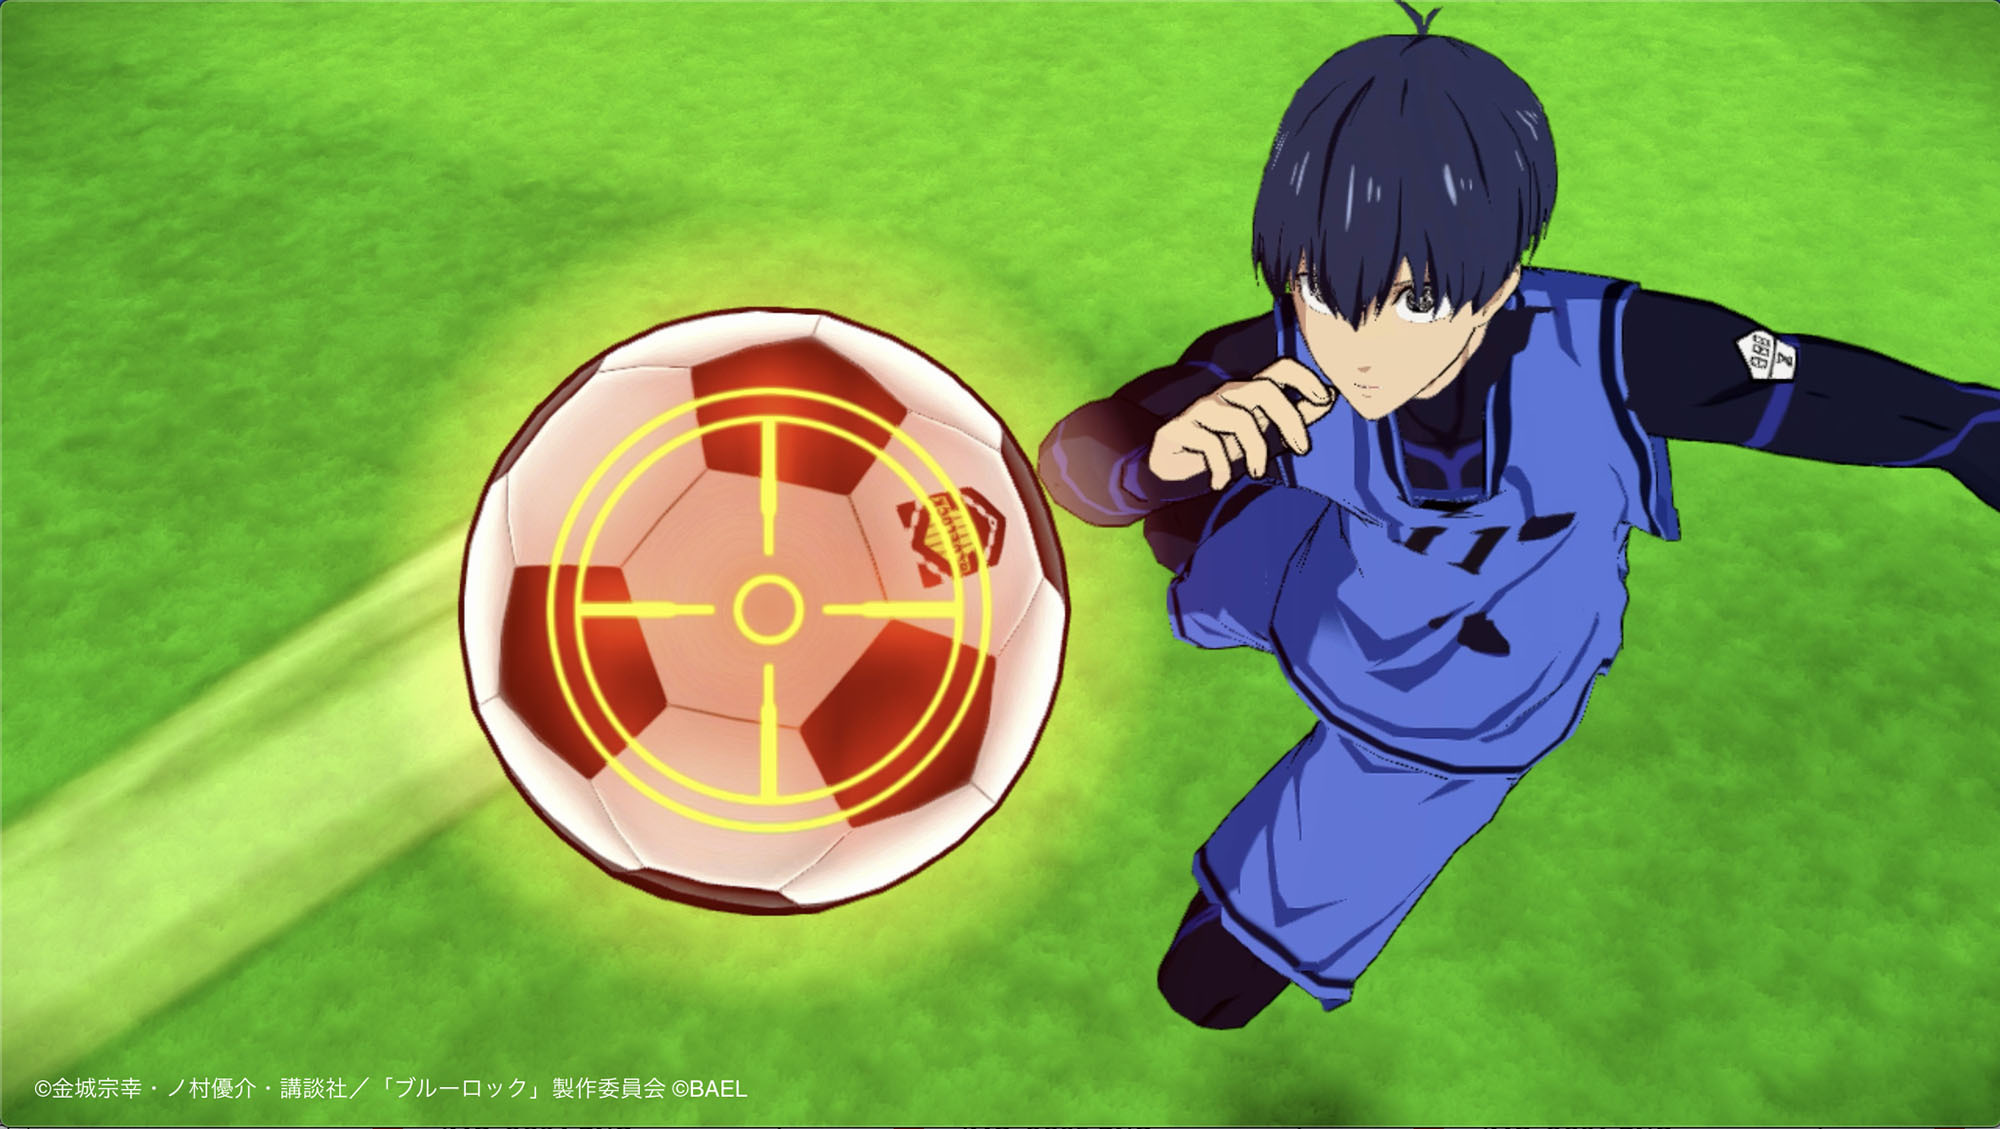 动画《蓝色监狱》改编3D足球游戏《蓝色监狱BLAZEBATTLE》于日本推出